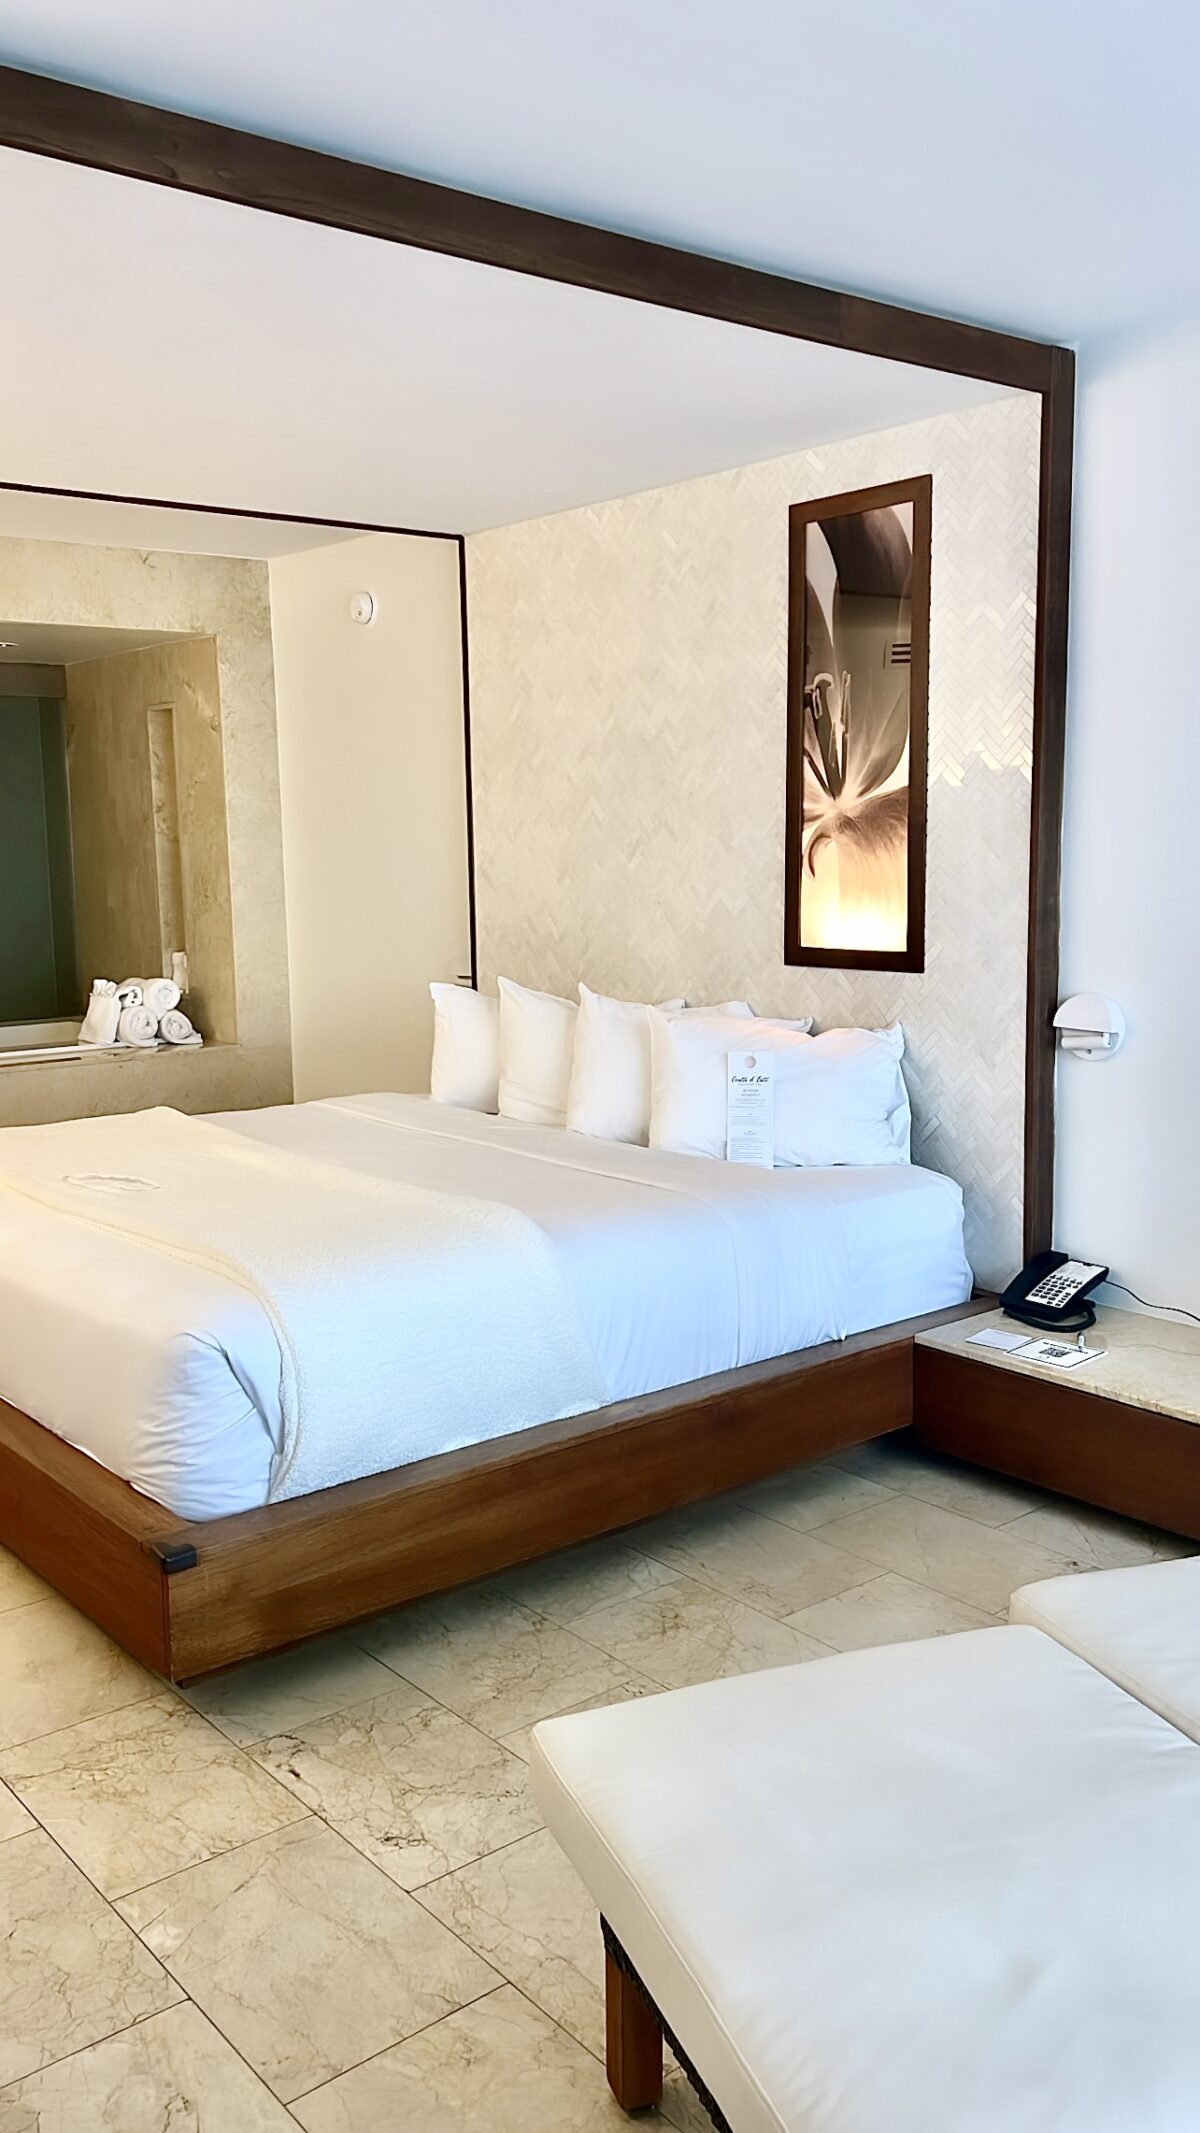 Costa d'Este room review Vero Beach hotel review